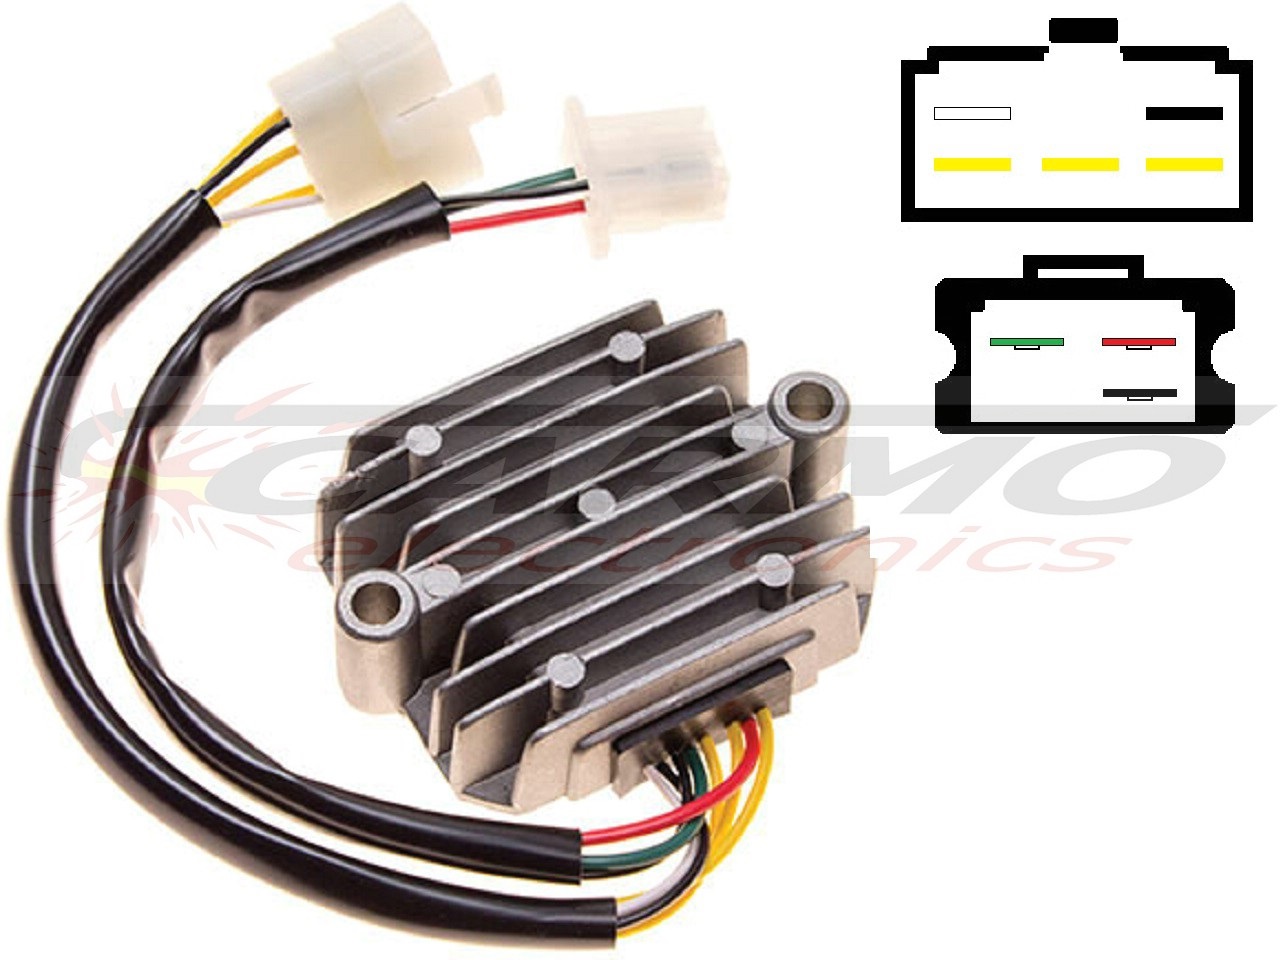 CARR221 - Honda MOSFET Spanningsregelaar gelijkrichter - Clique na Imagem para Fechar